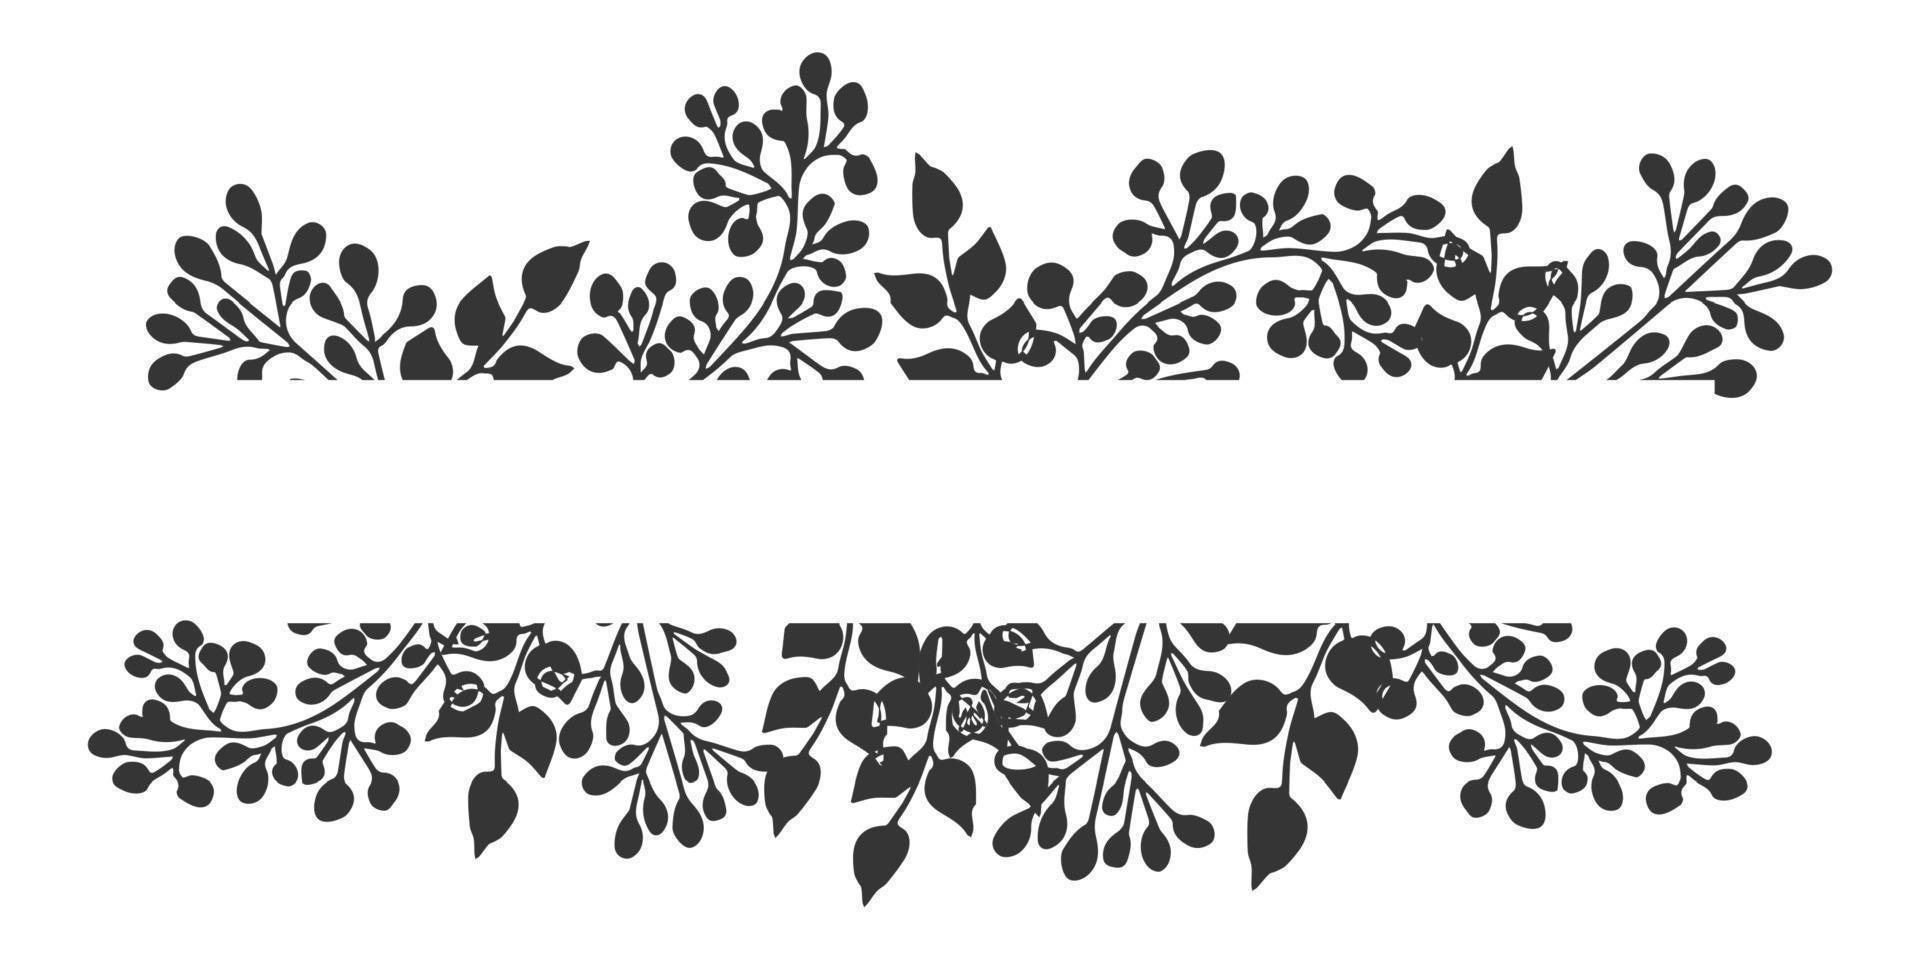 bordo diviso, cornice monogramma floreale in stile doodle isolato su sfondo bianco. decorazione dal design elegante, elemento. illustrazione vettoriale